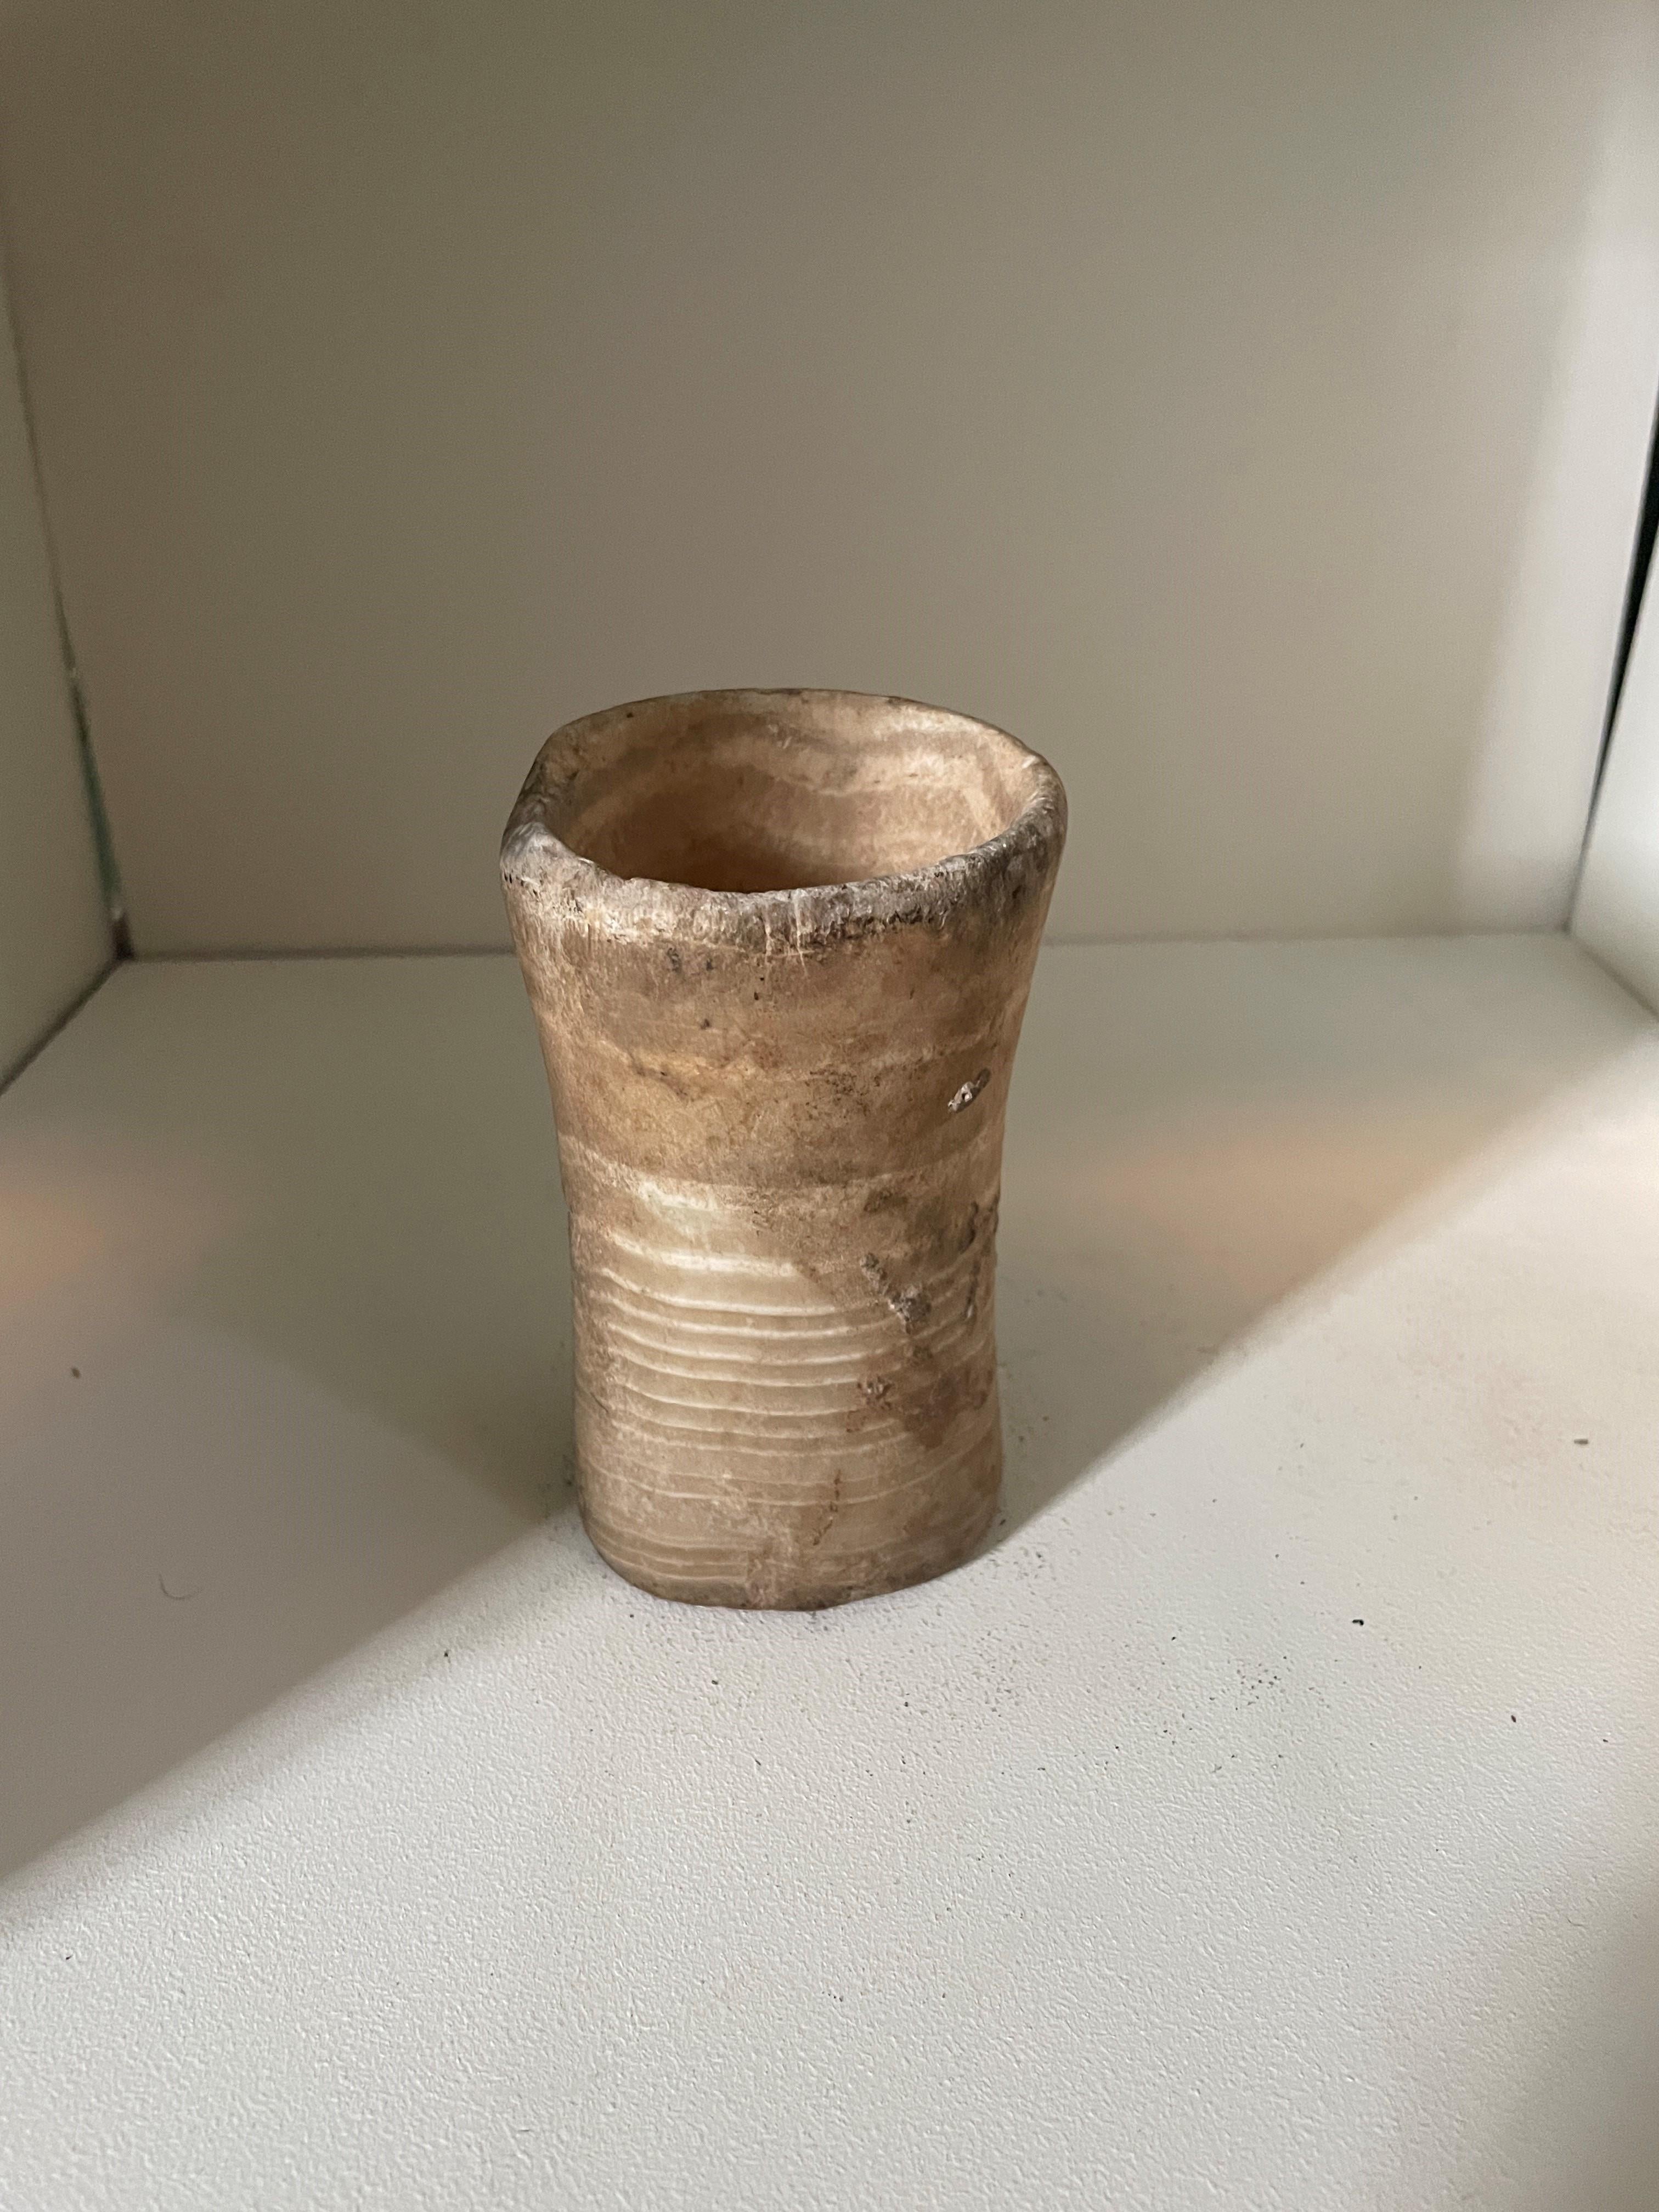 Vase à offrandes en albâtre de Bactrian, deuxième millénaire avant J.-C. Petit récipient en albâtre veiné de forme cylindrique à taille asymétrique. L'intérieur à mi-chemin dans un U boul. Résidus composites à l'intérieur et à l'extérieur du navire.